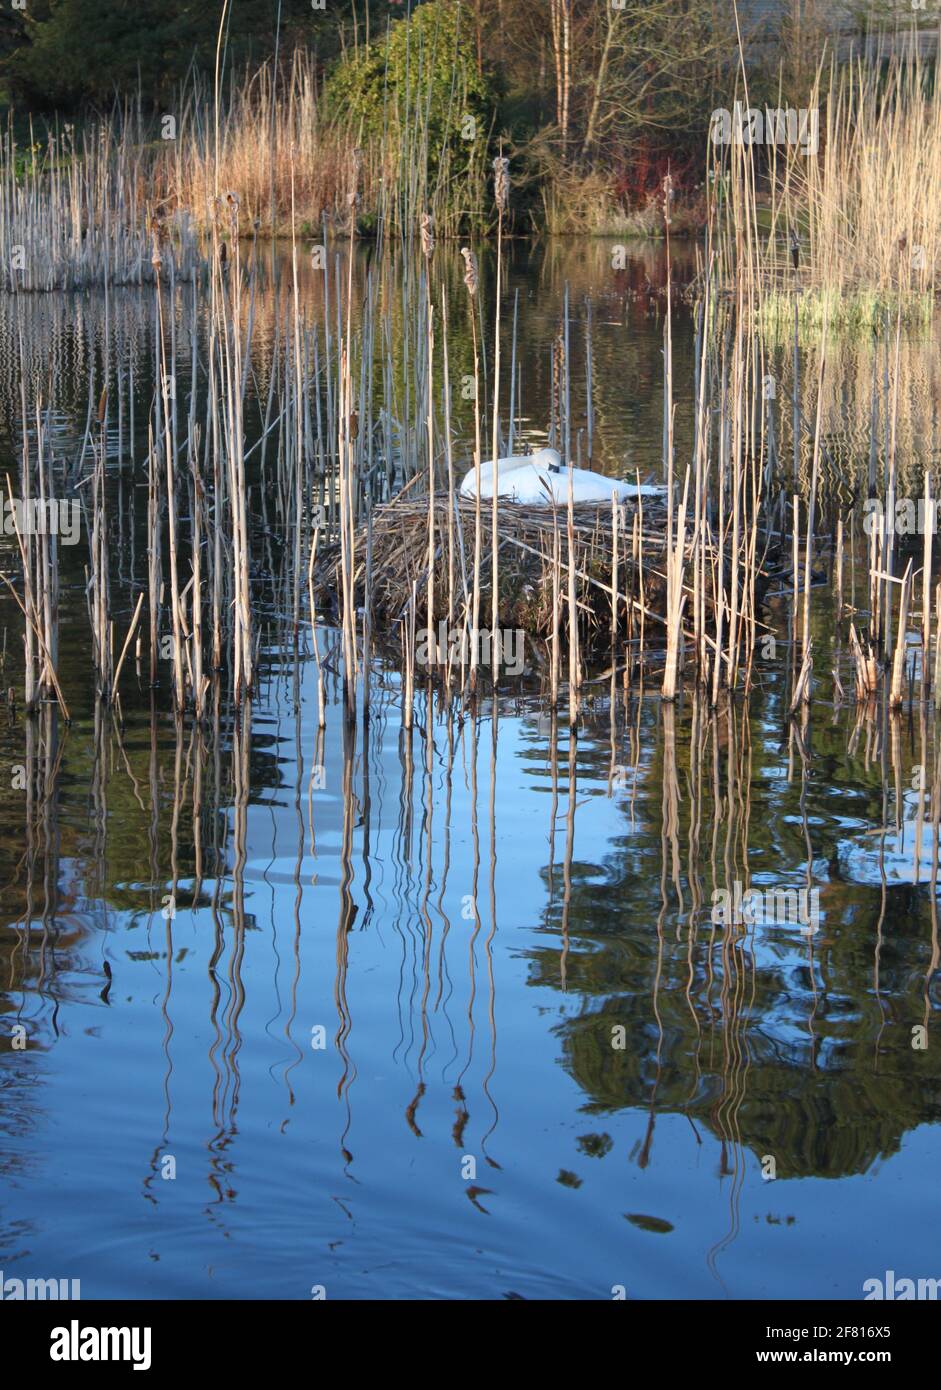 Mute a los cisnes que anidan en un lago escocés en un entorno urbano. Cisne blanco anidando entre cañas de lago durante la primavera. Animales salvajes capturados en primavera. Foto de stock